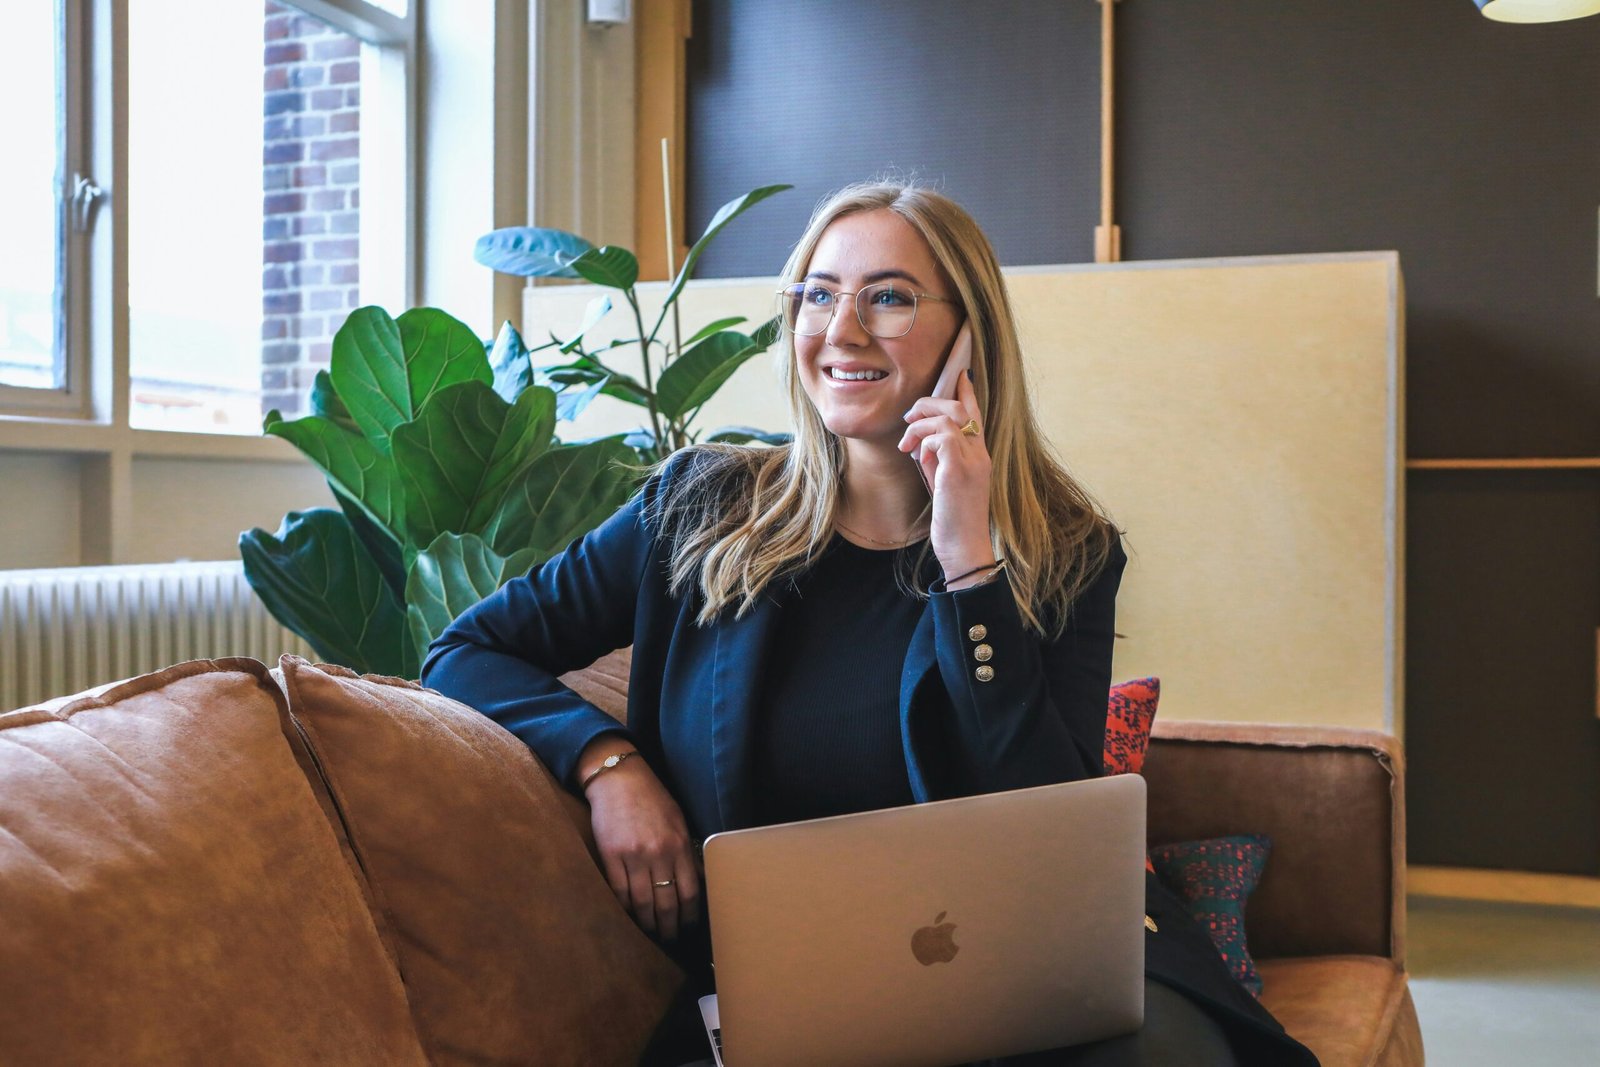 Femme d'affaires utilisant un téléphone et un ordinateur portable tout en souriant, assise dans un espace de bureau avec une plante verte en arrière-plan.